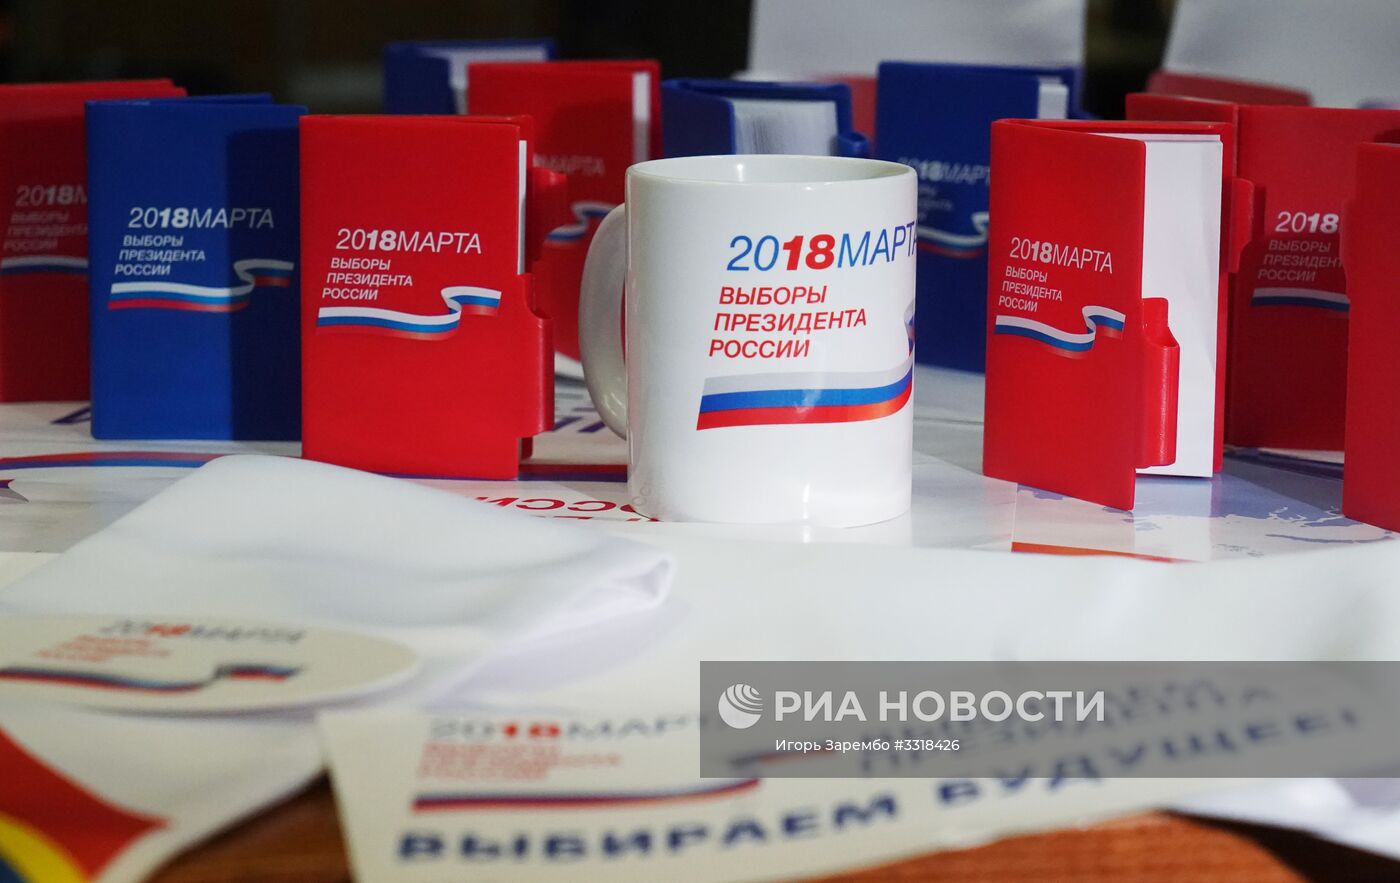 Презентация сувенирной продукции к выборам президента РФ